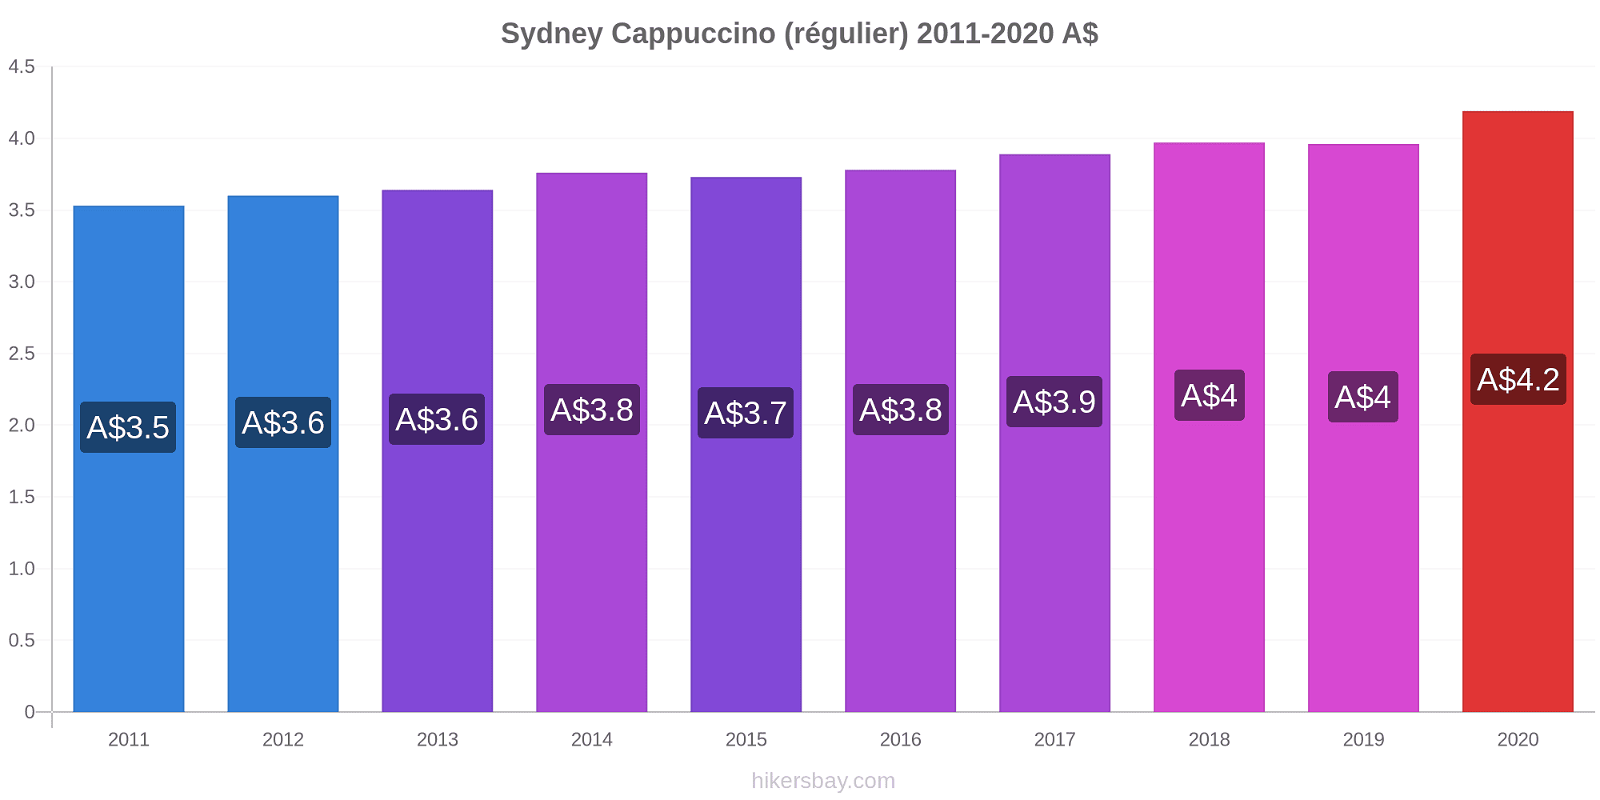 Sydney changements de prix Cappuccino (régulier) hikersbay.com